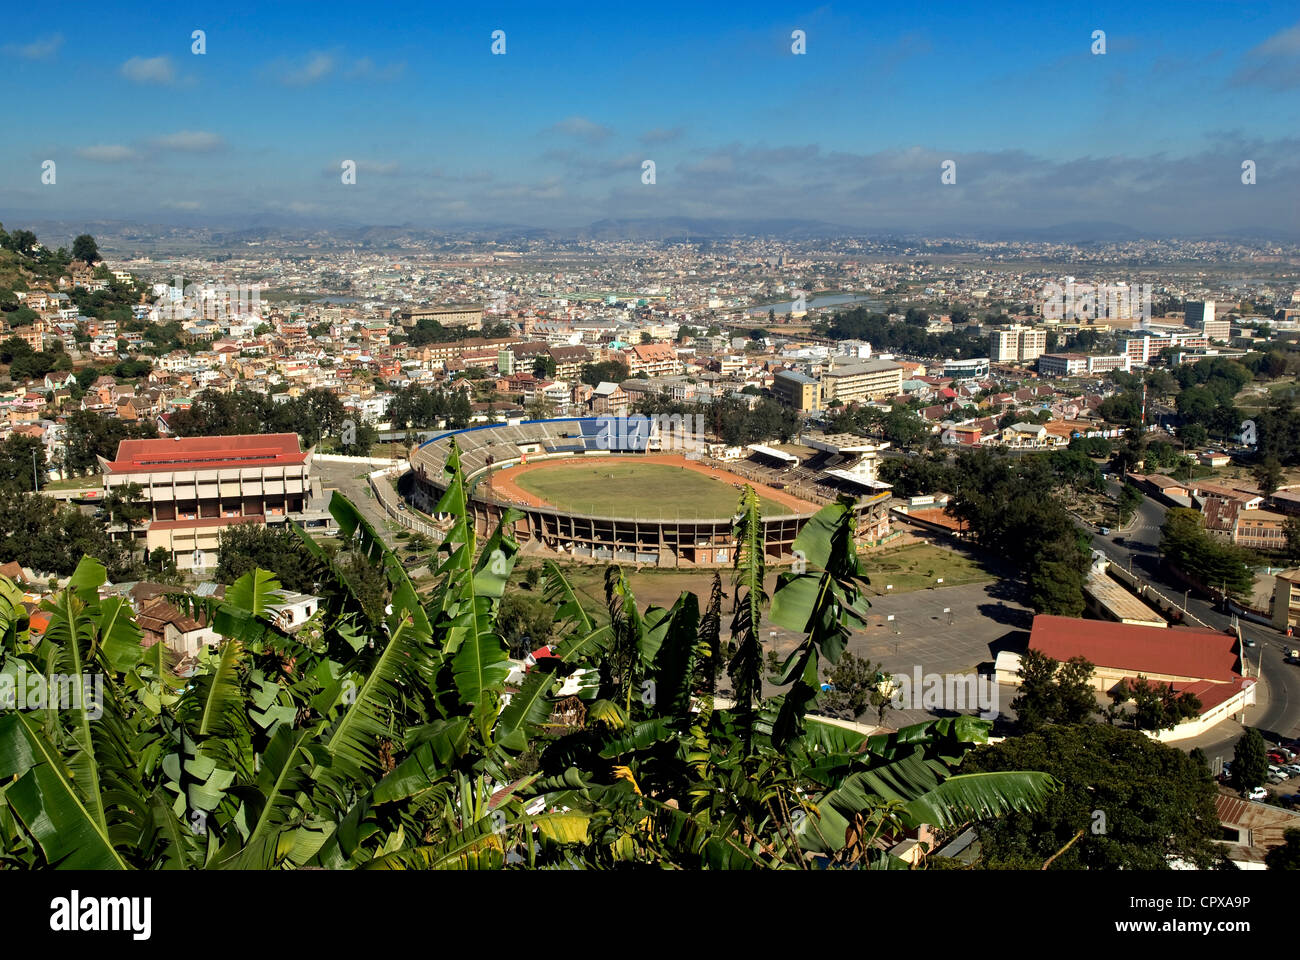 Madagascar Analamanga region Antananarivo Tananarive or Tana view over stadium of city from historical quarter of Andahalo on Stock Photo